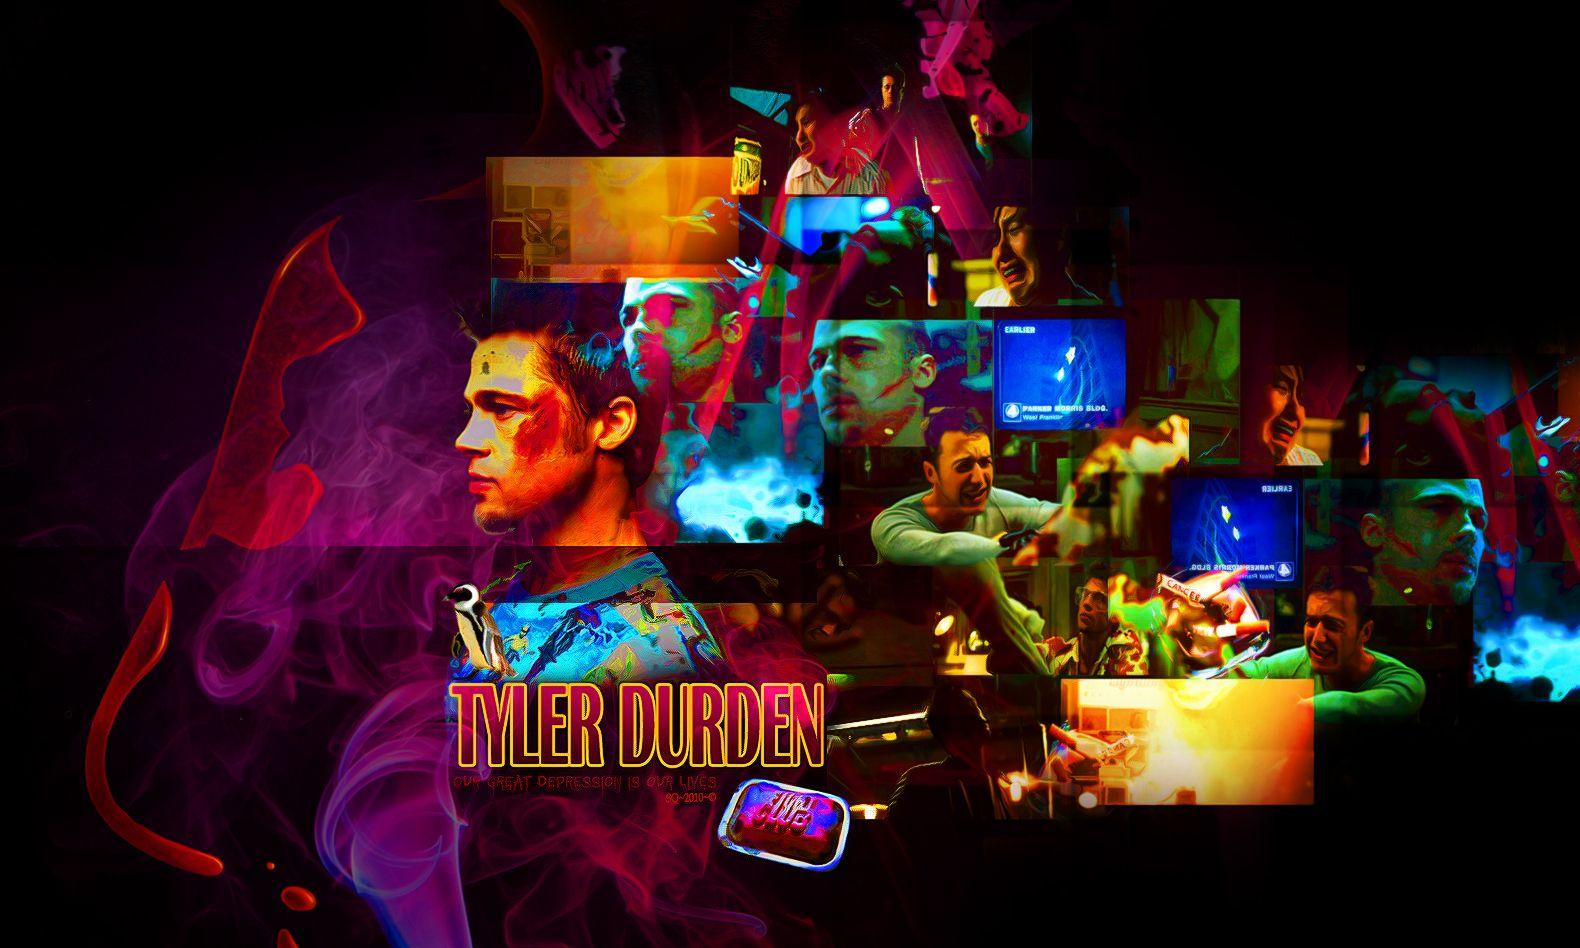 Fight Club- Tyler Durden motion